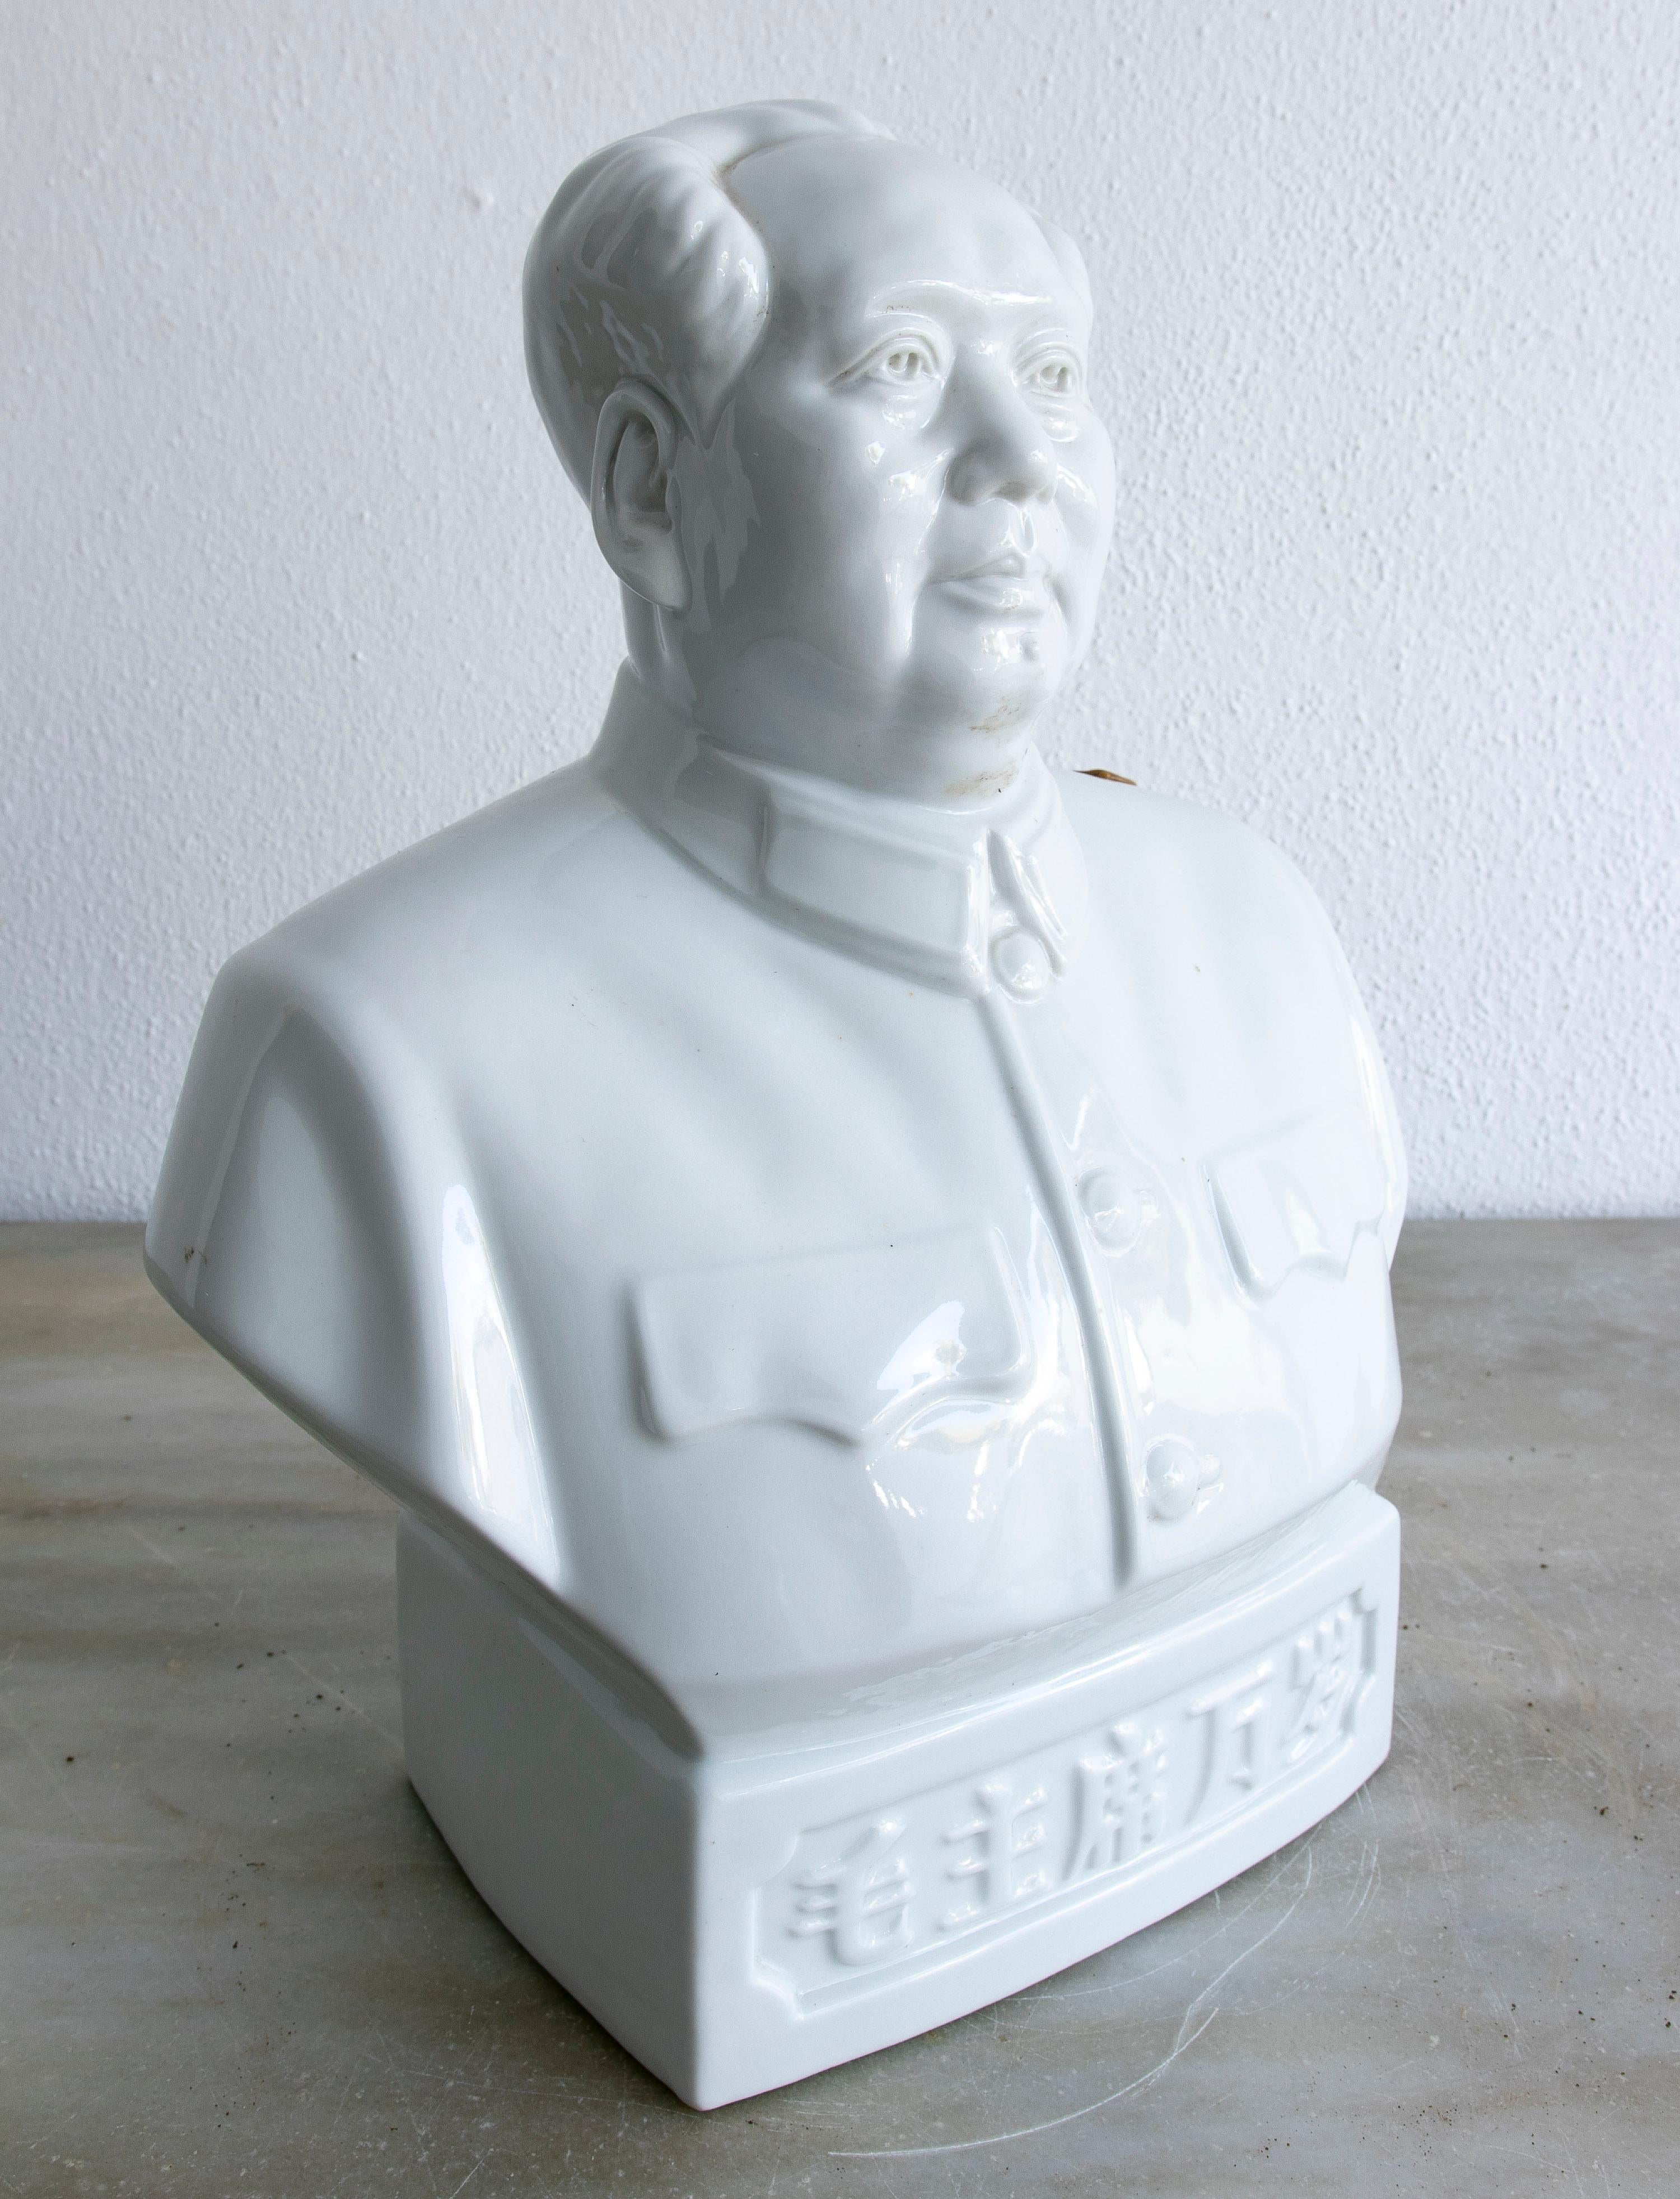 buste en porcelaine chinoise des années 1990 représentant Mao Zedong, avec timbre des douanes chinoises autorisant son exportation.